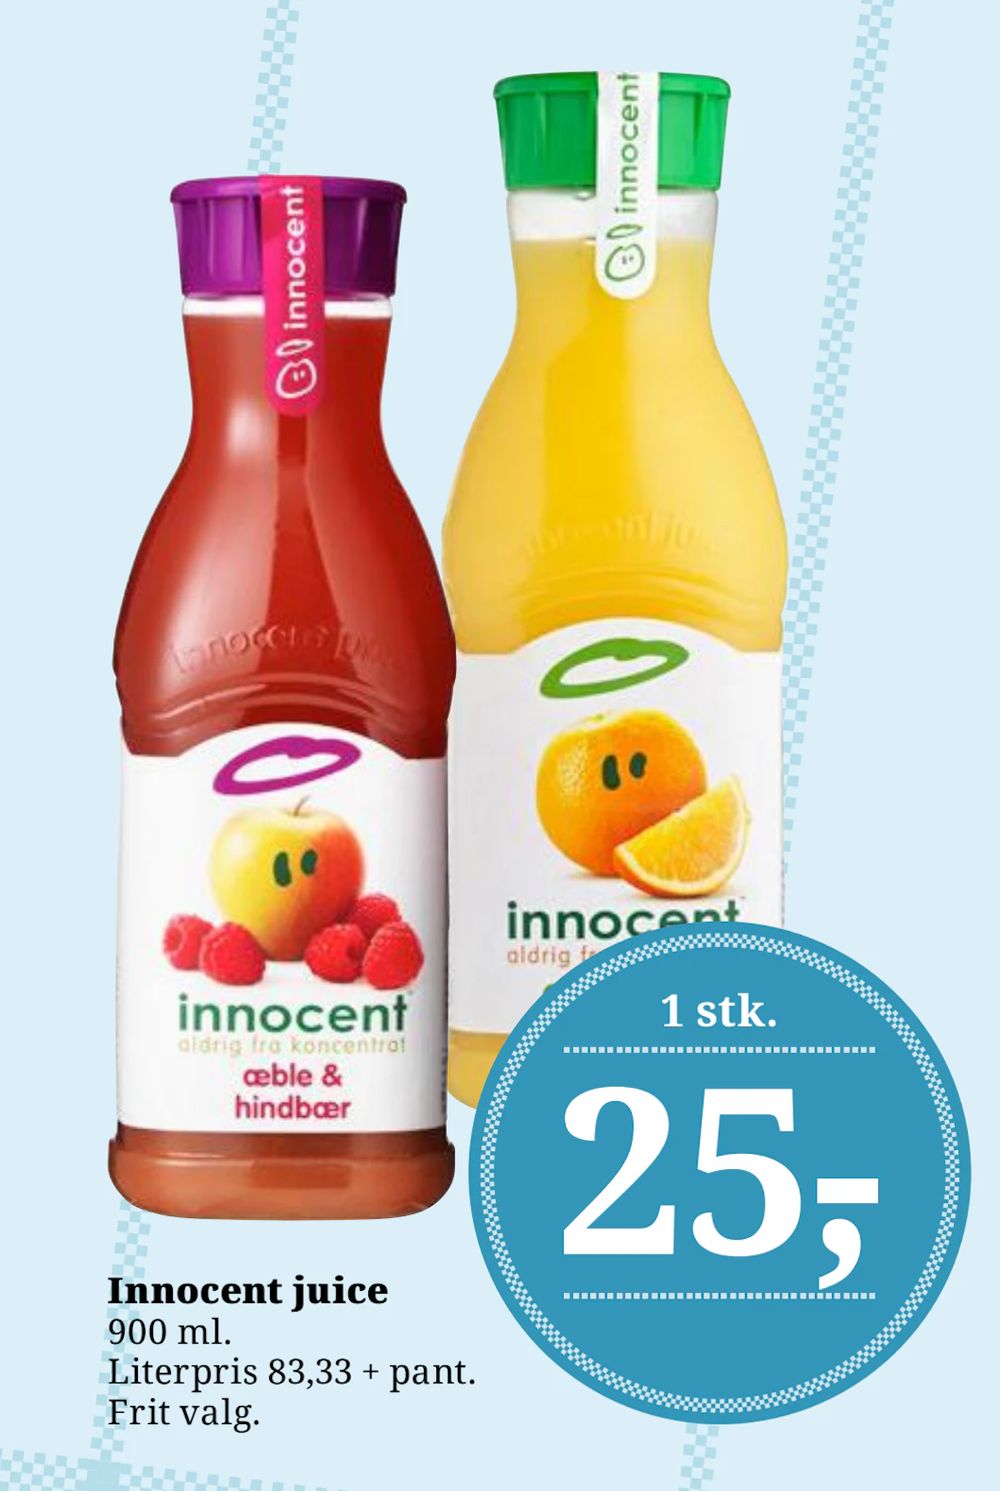 Tilbud på Innocent juice fra Dagli'Brugsen til 25 kr.